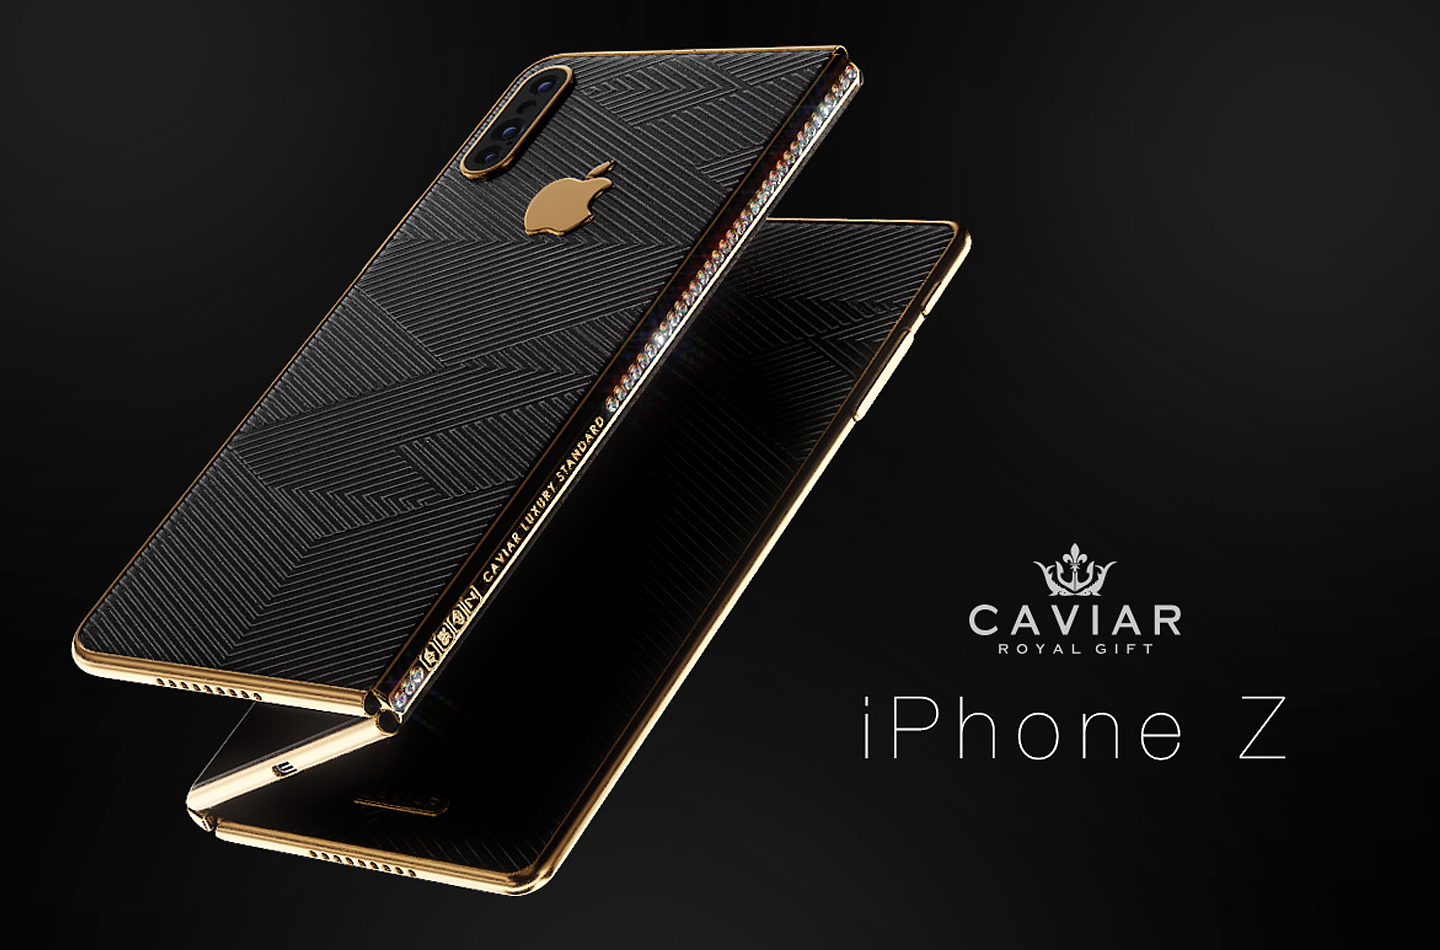 IPhone plegable: teléfono inteligente plegable exclusivo de Caviar